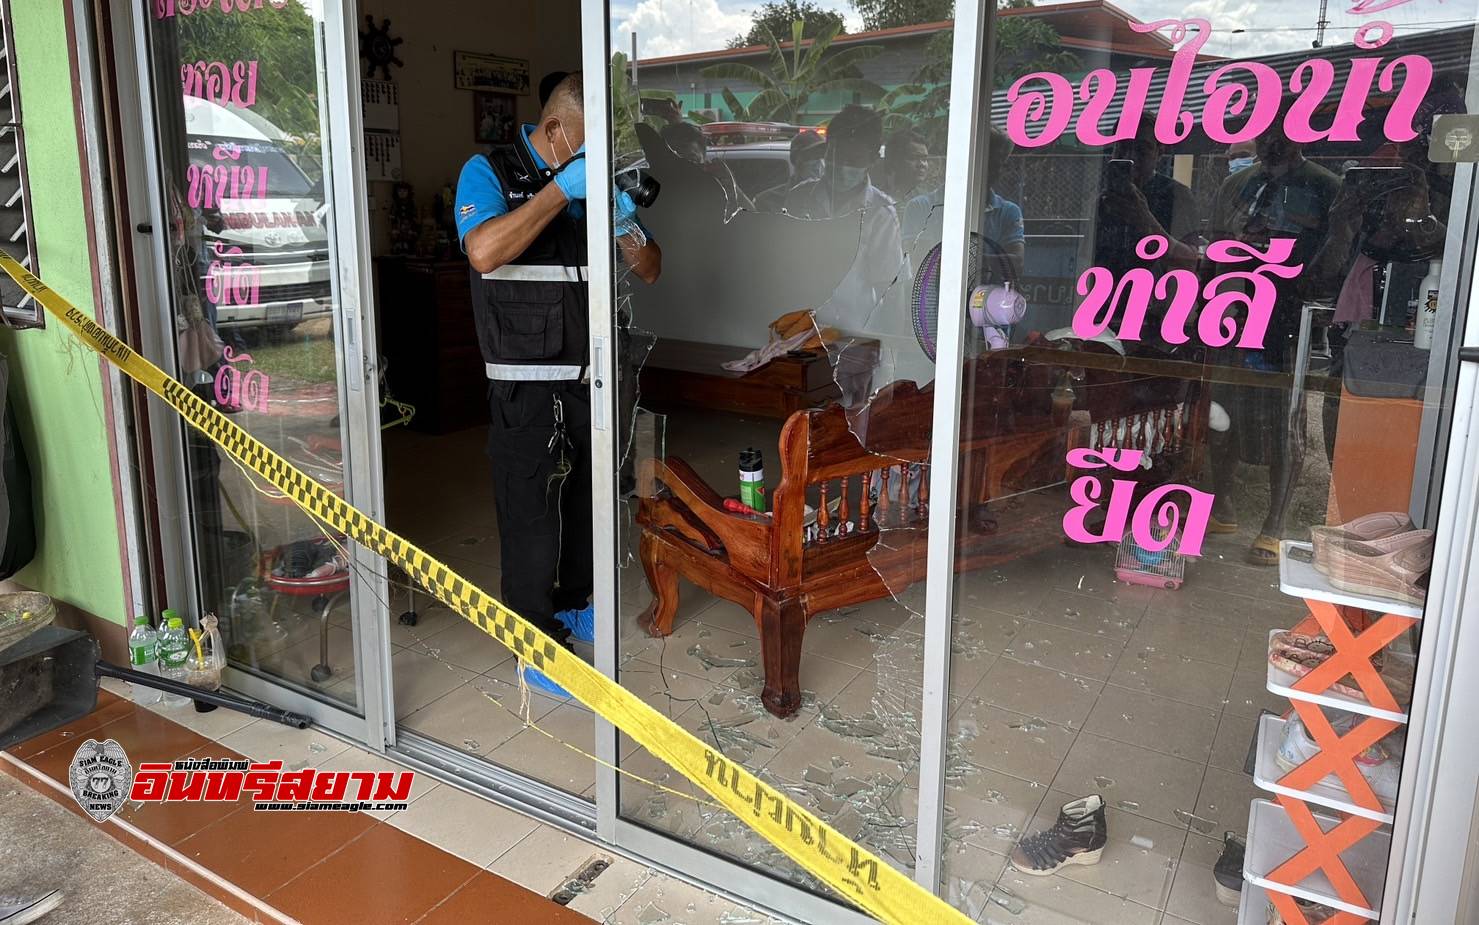 ปราจีนบุรี-หนุ่มใหญ่บุกยิงกระจกหน้าห้องพักแตก ก่อนยิงม่ายสาวช่างเสริมสวย 2 นัดตายคาที่นอน